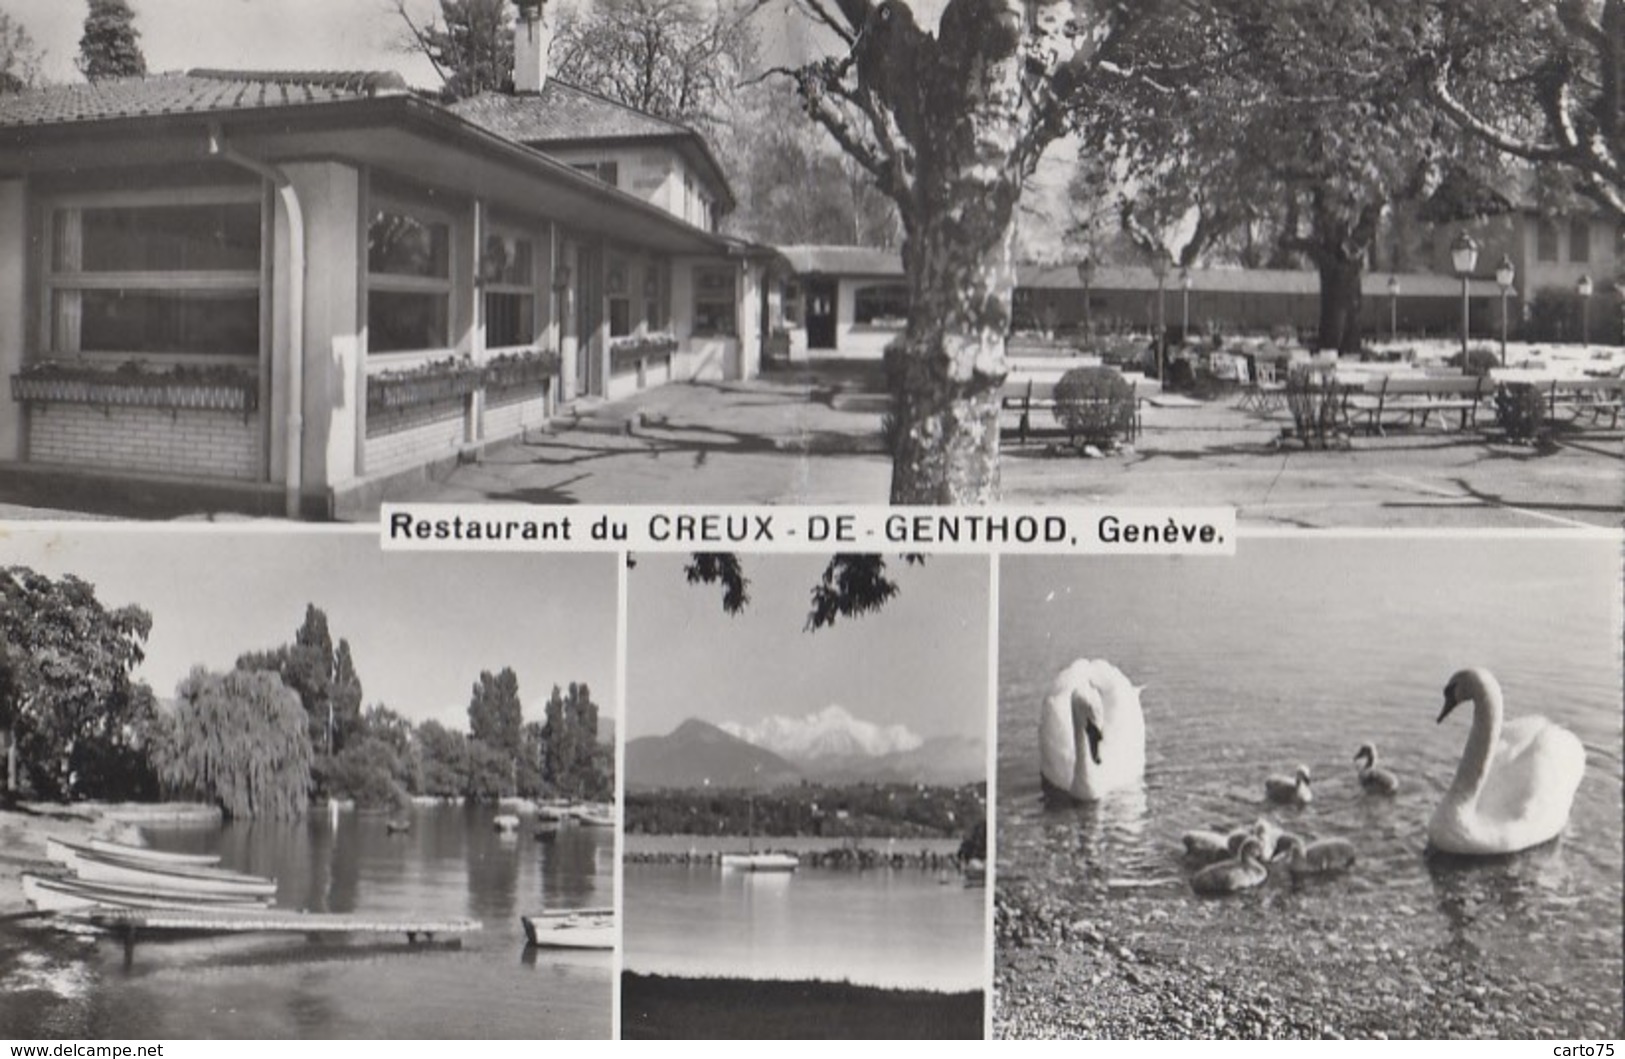 Suisse - Restaurant Du Creux-de-Genthod - 1966 - Genthod